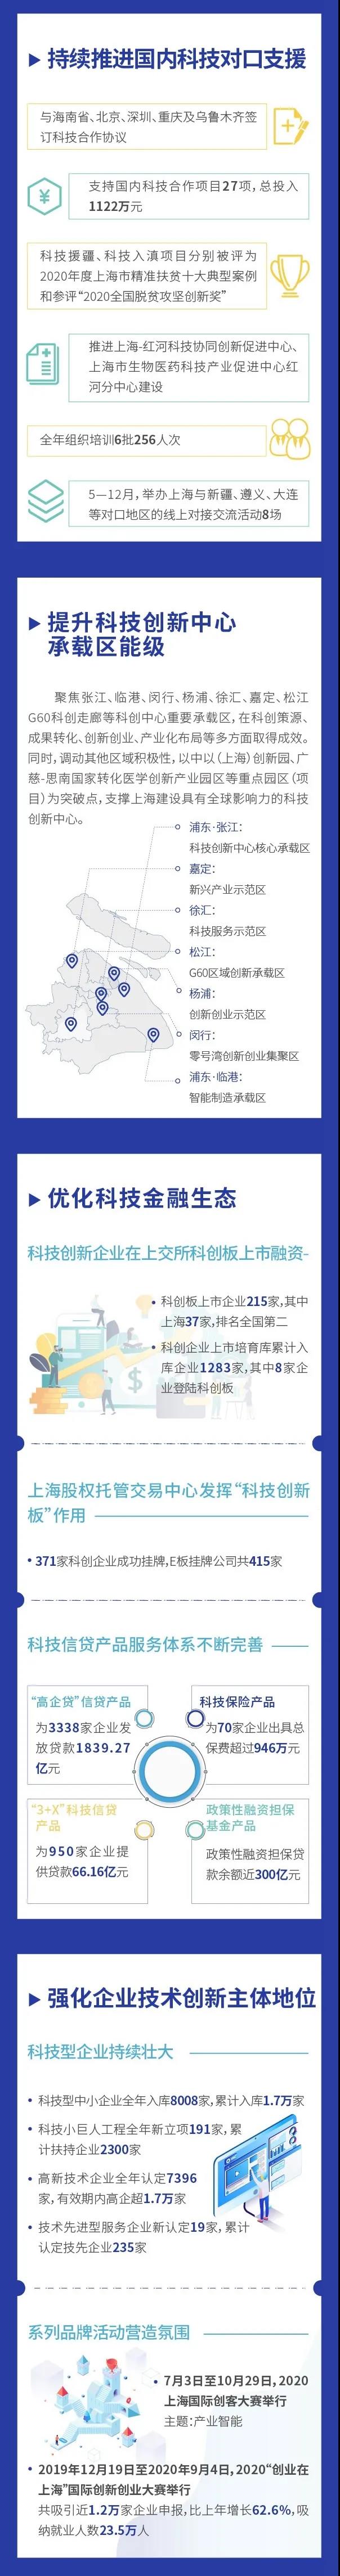 图看《2020上海科技进步报告》④3.jpg